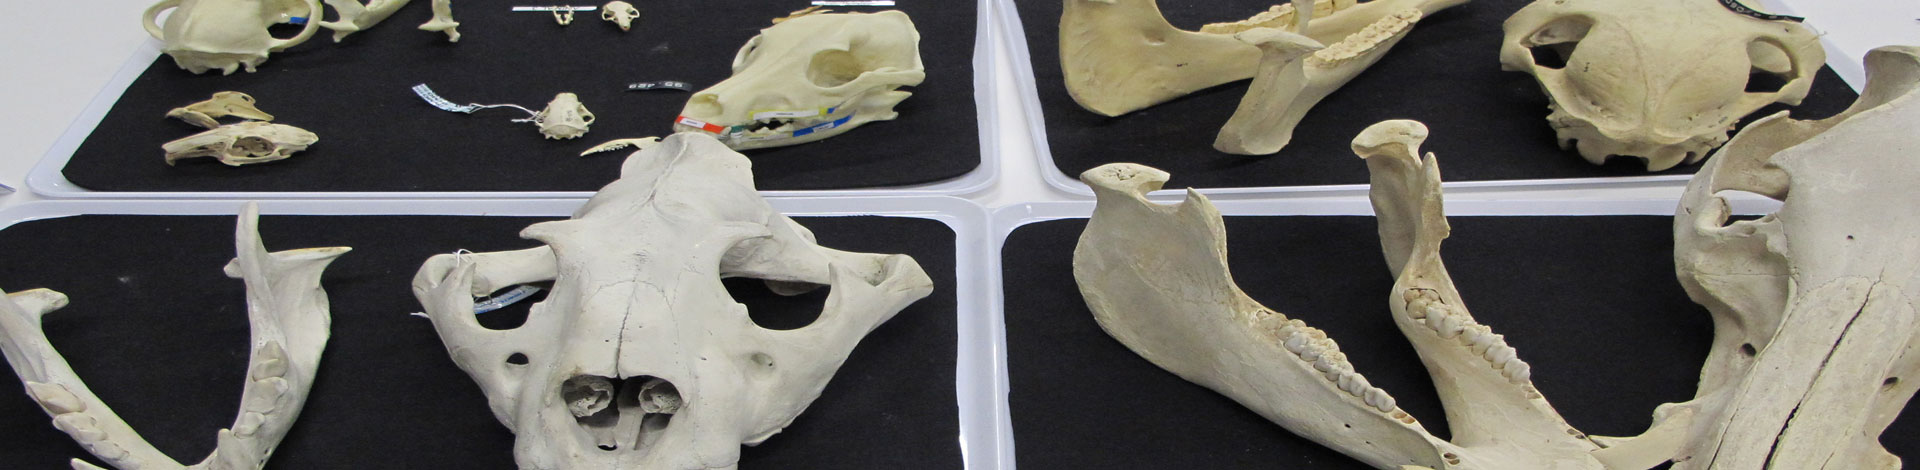 peces i ossos i cranis de diversos animals